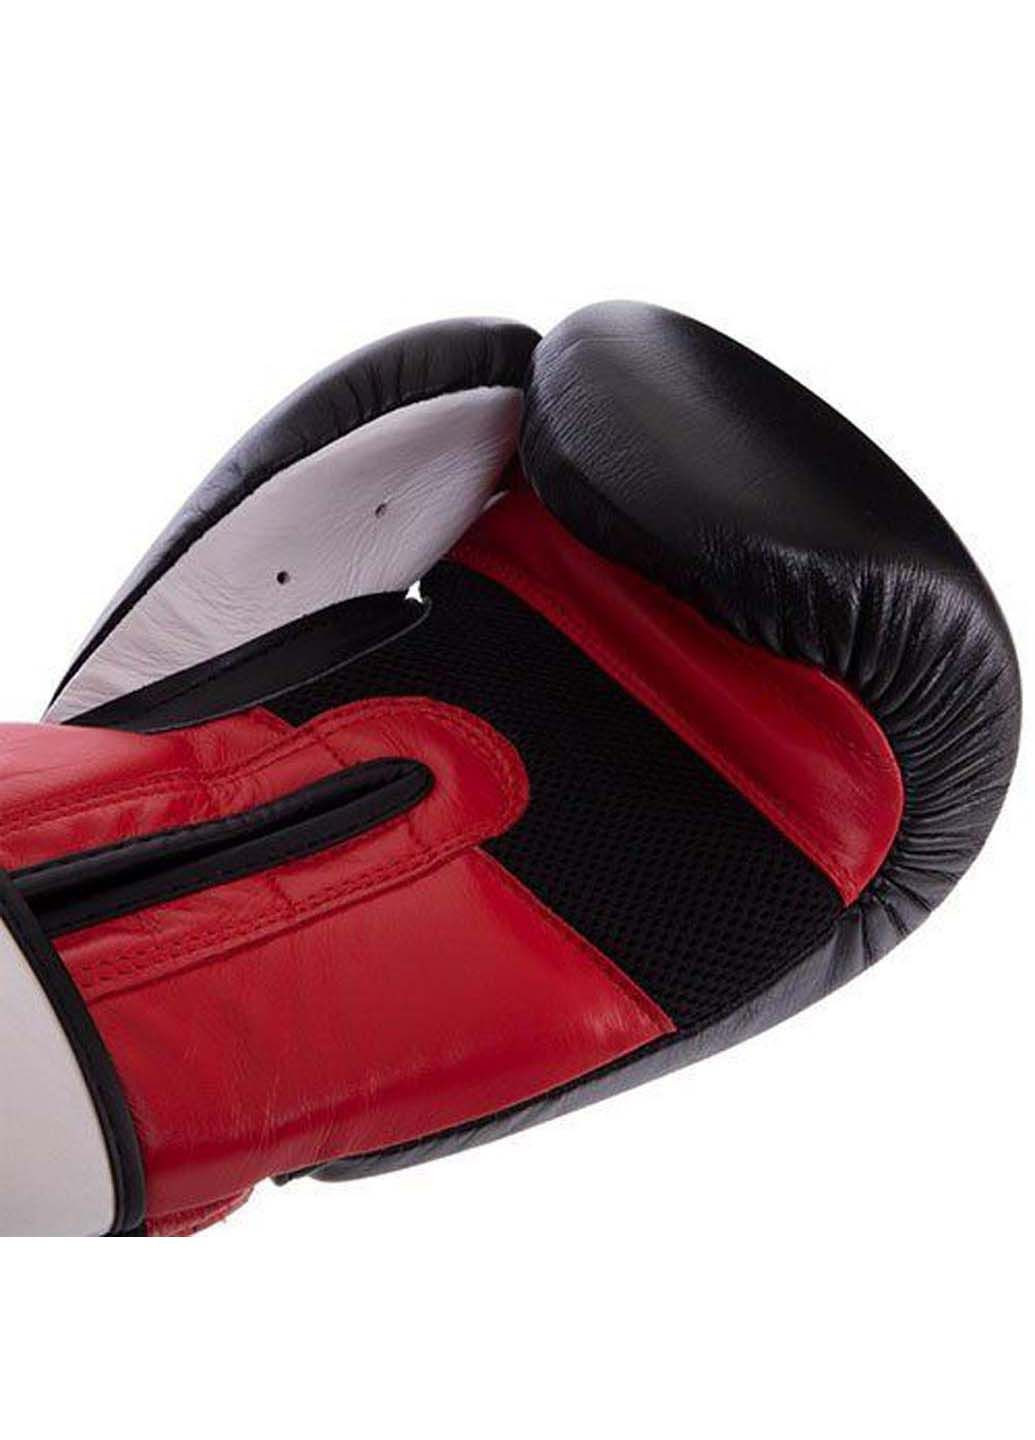 Перчатки боксерские PRO Training UHK-69990 14oz UFC (285794110)